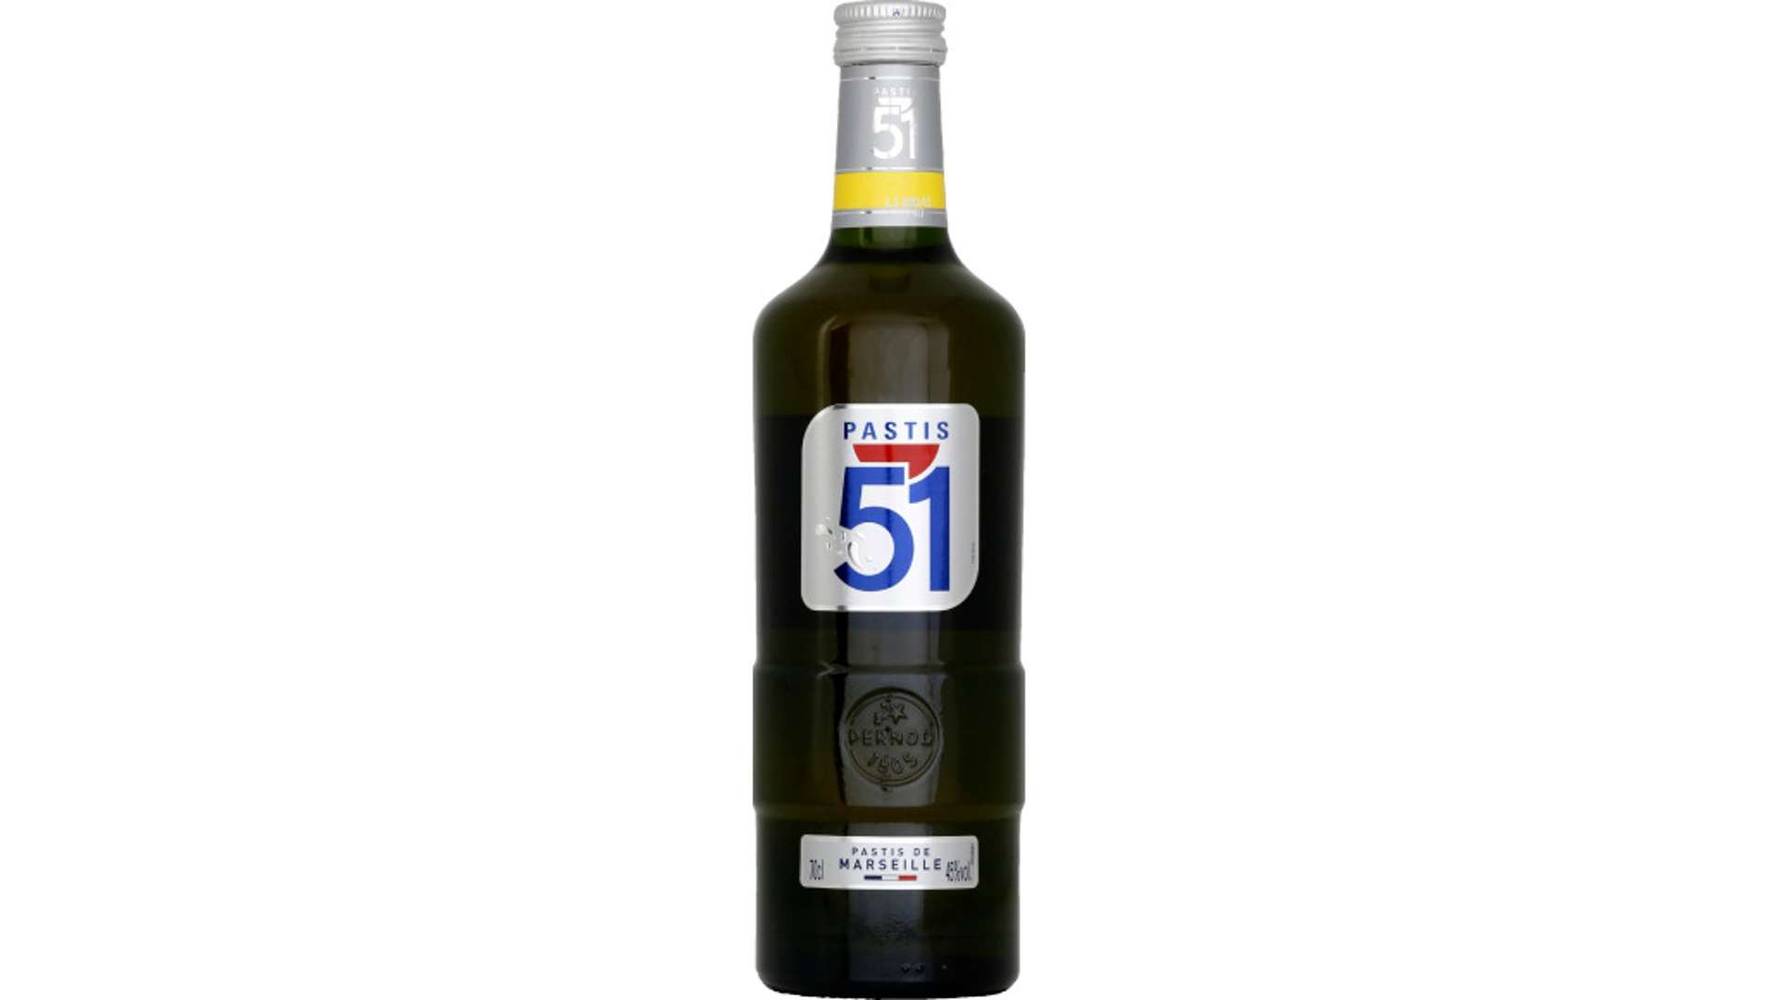 Pastis 51 - Pastis de Marseille (700 ml)